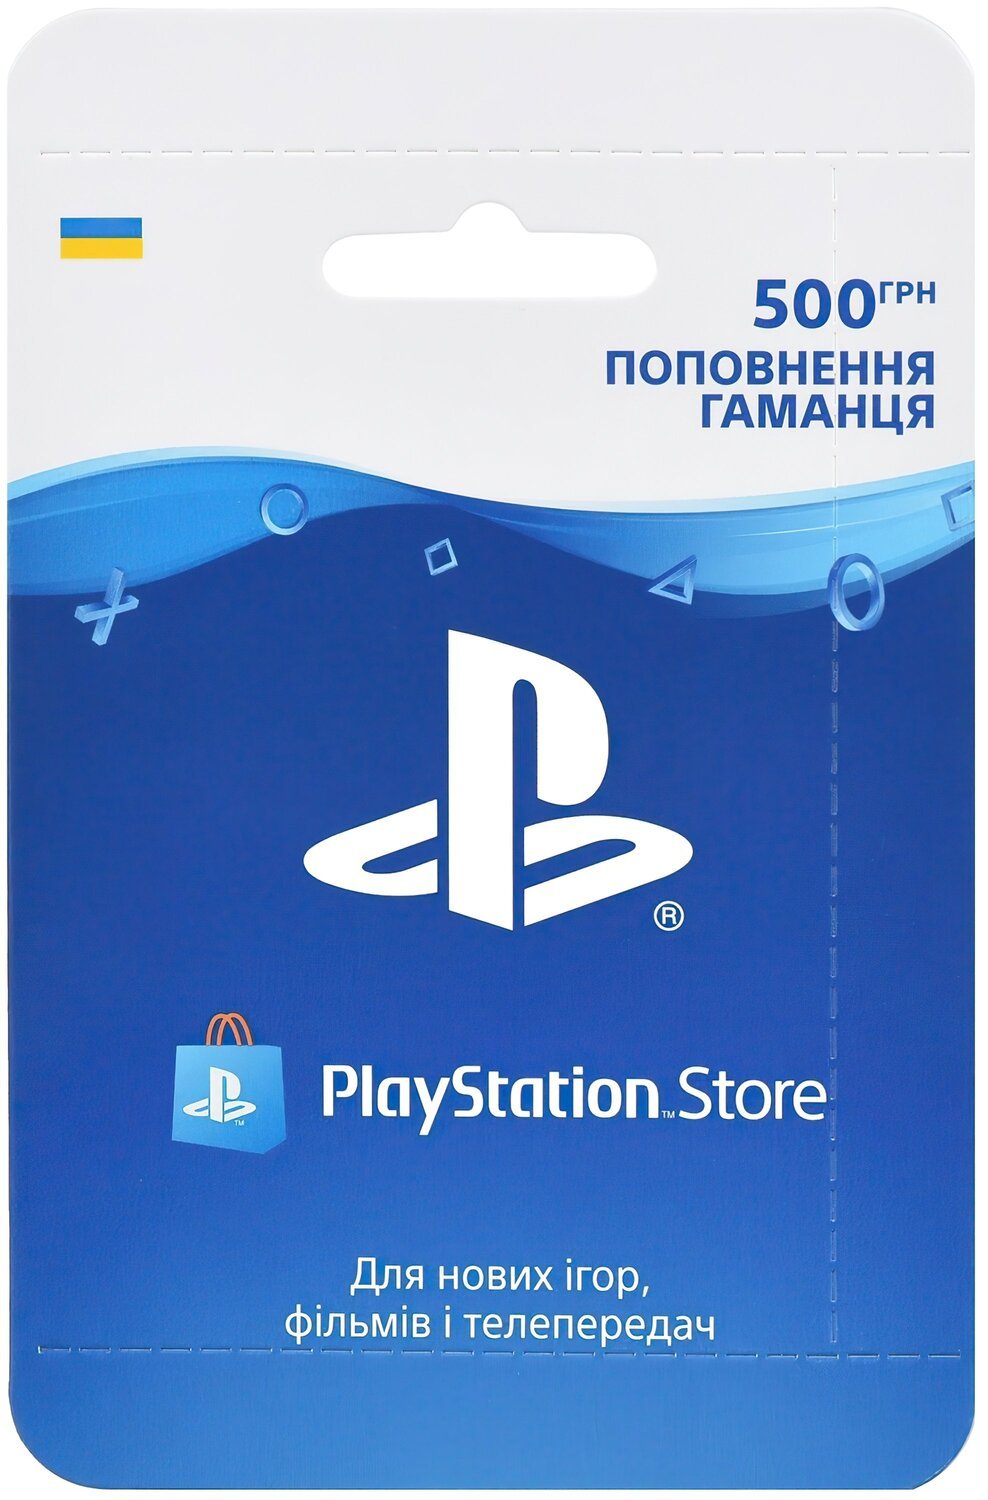  Playstation Store поповнення: Карта оплати 500 грн фото